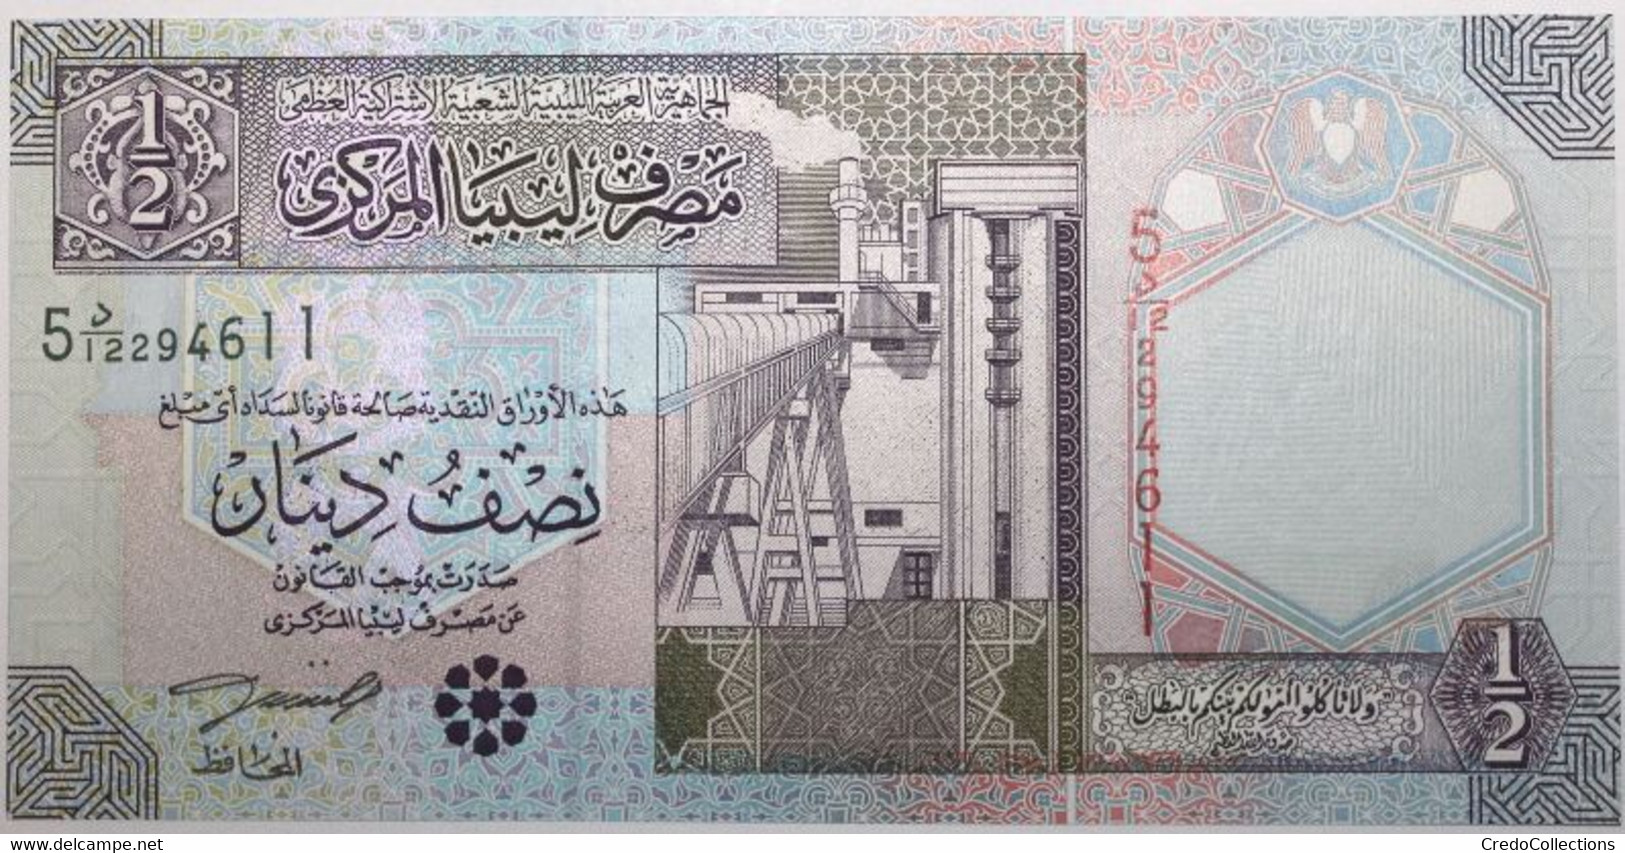 Libye - 0,5 Dinar - 2002 - PICK 63 - NEUF - Libye